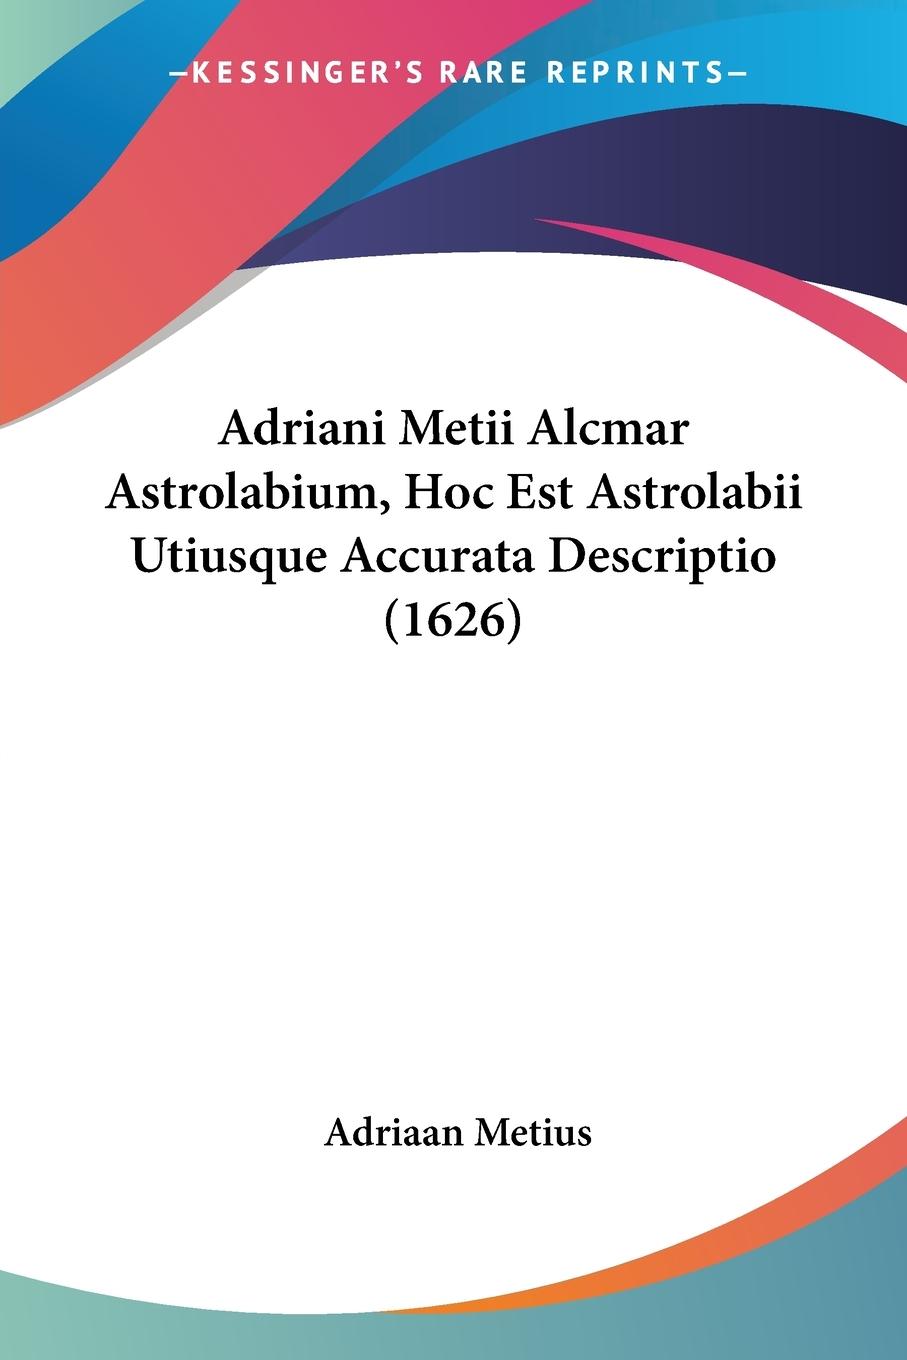 Adriani Metii Alcmar Astrolabium, Hoc Est Astrolabii Utiusque Accurata Descriptio (1626) - Metius, Adriaan